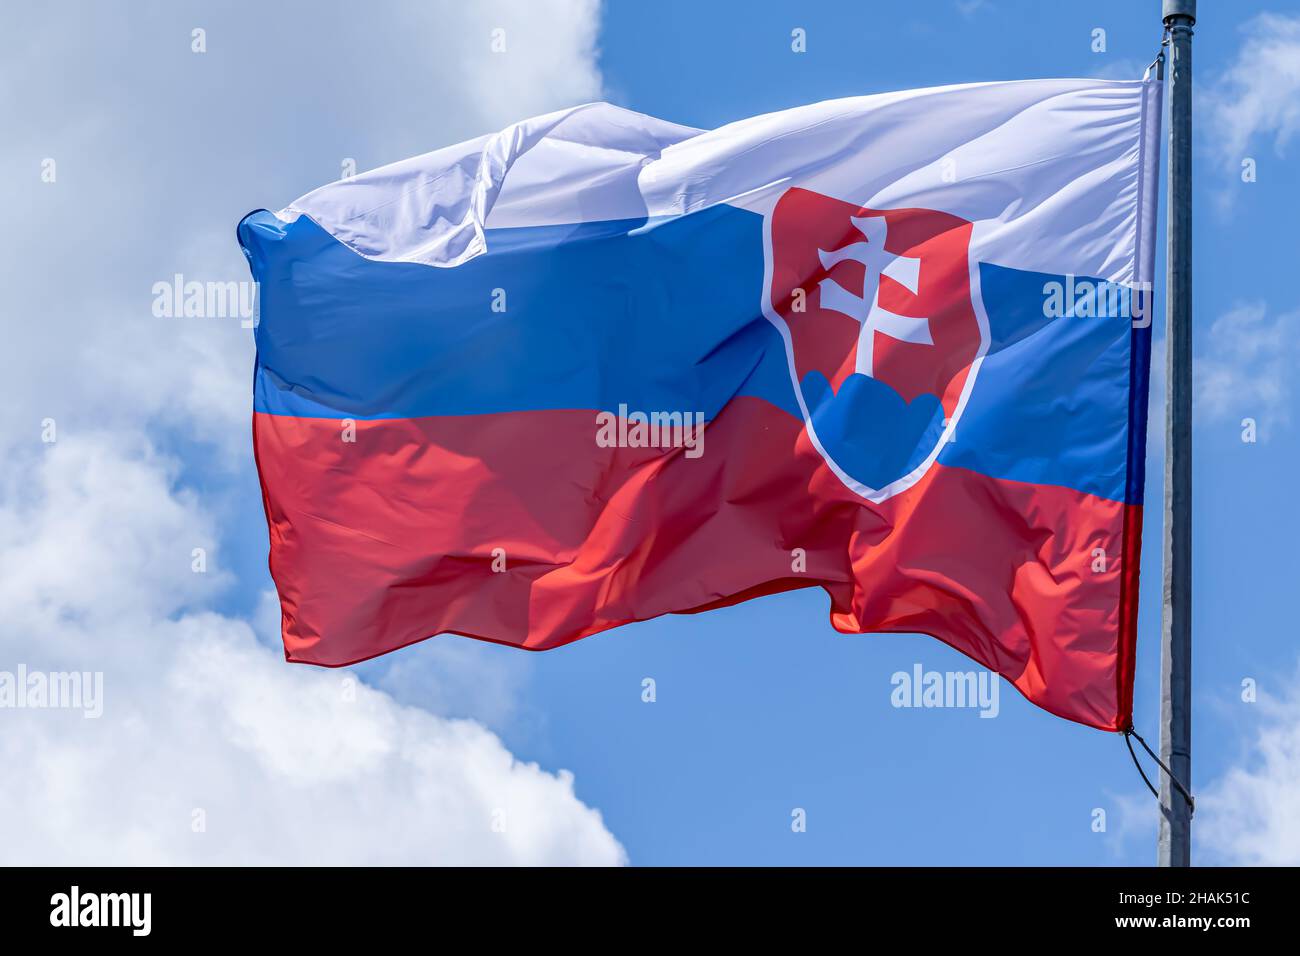 Bandiera nazionale slovacca che sventola su sfondo cielo blu. Repubblica slovacca, SK Foto Stock